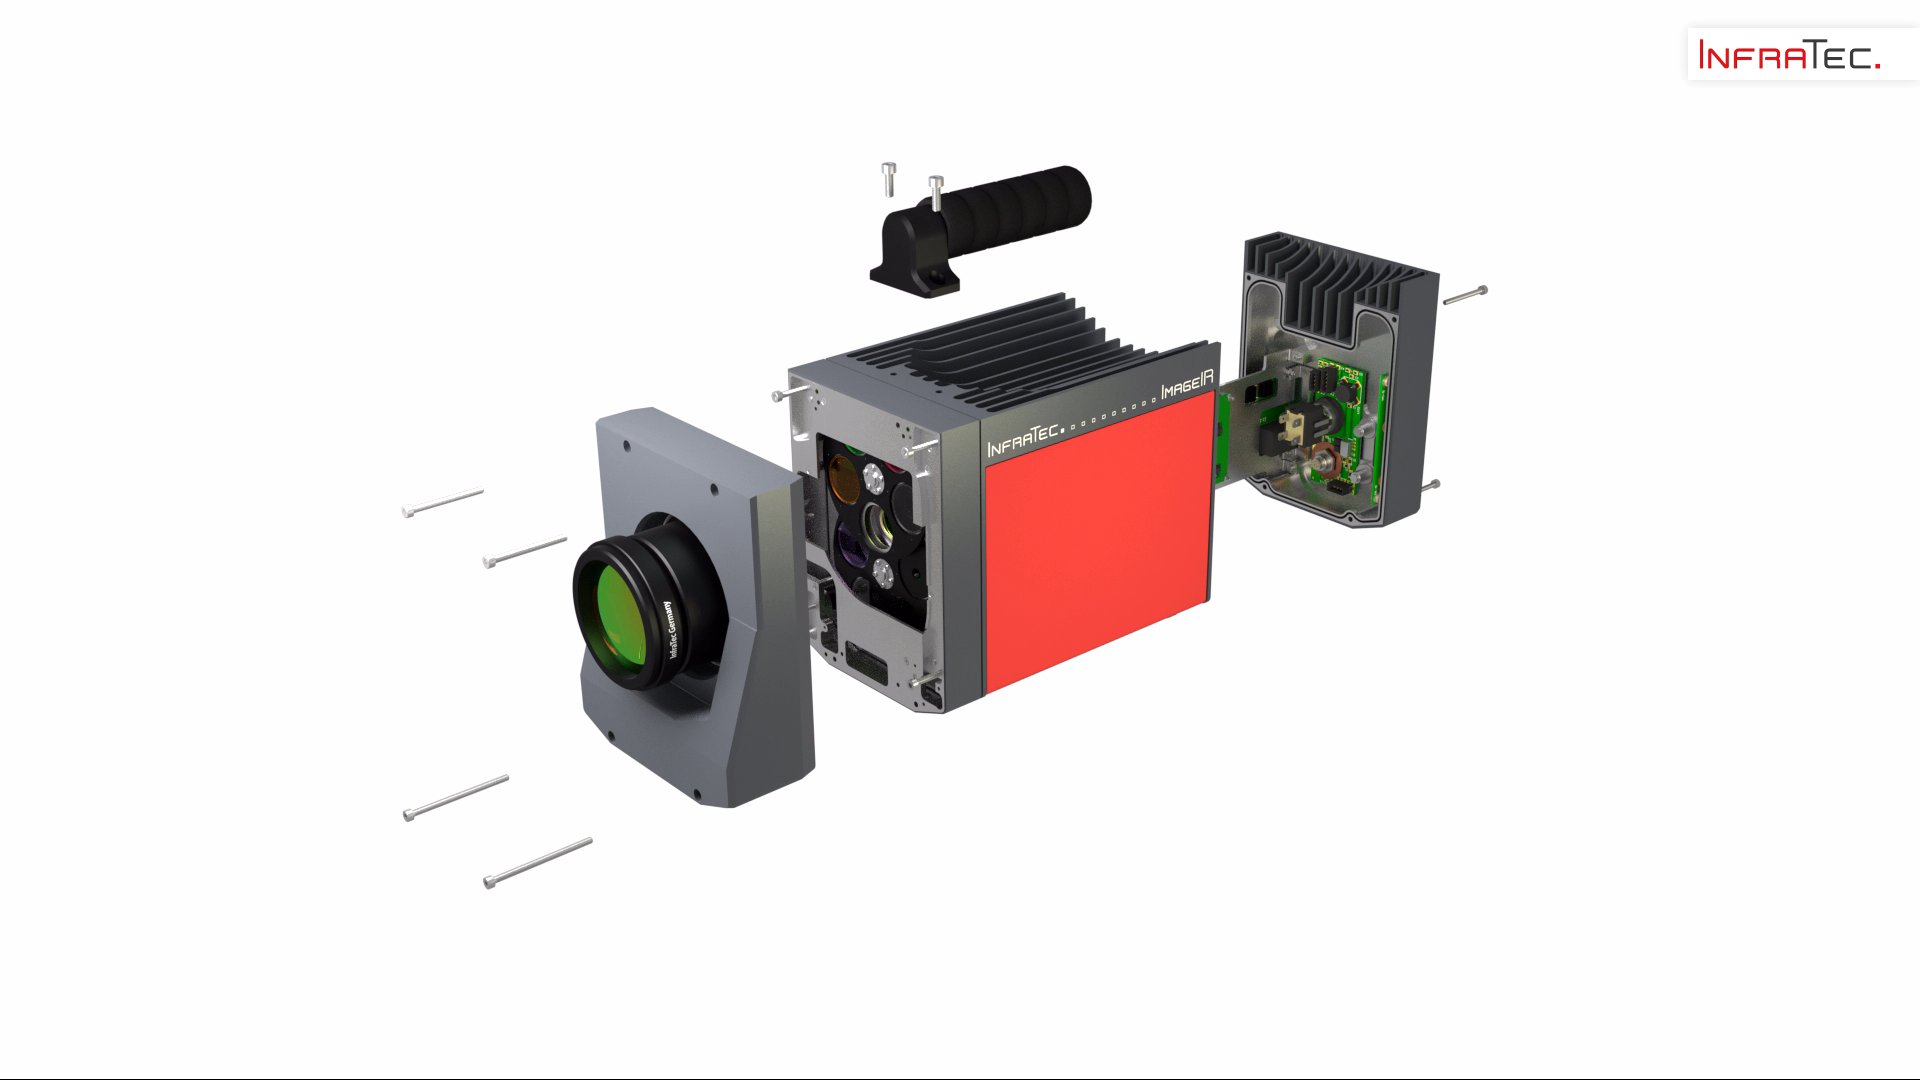 Modulares Design der Wärmebildkameraserie ImageIR® von InfraTec